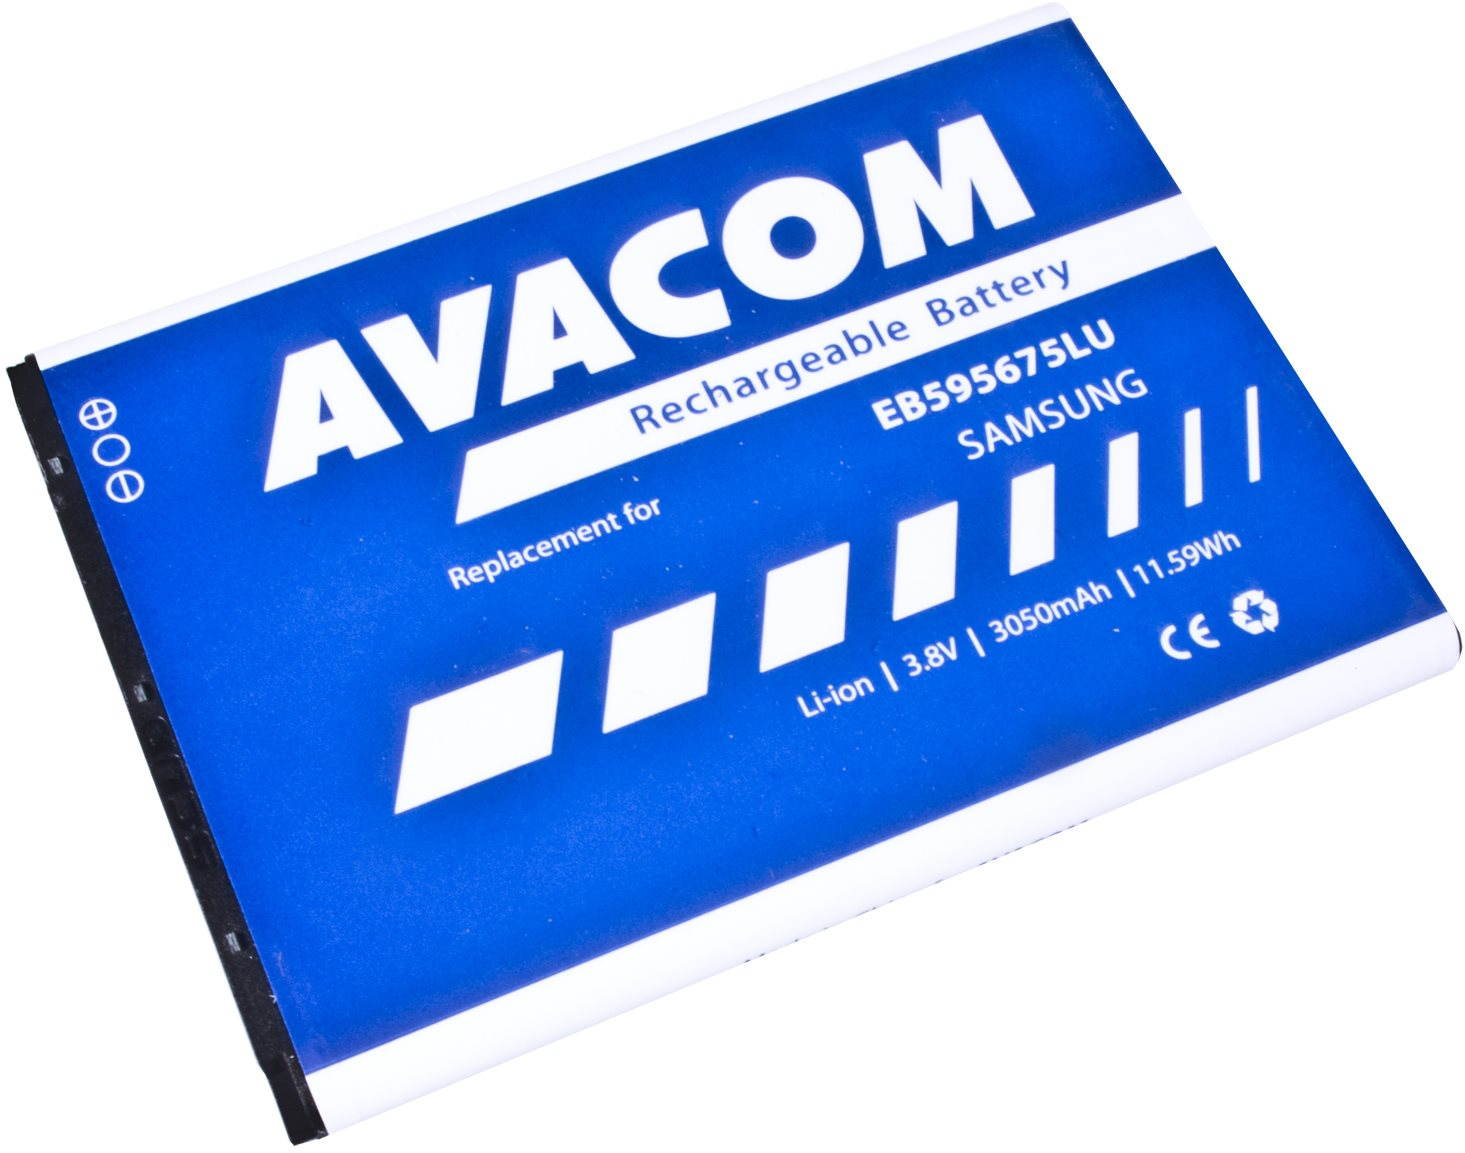 AVACOM akkumulátor Samsung Galaxy Note 2 készülékhez, Li-ion, 3,7 V, 3050 mAh (EB595675LU helyett)